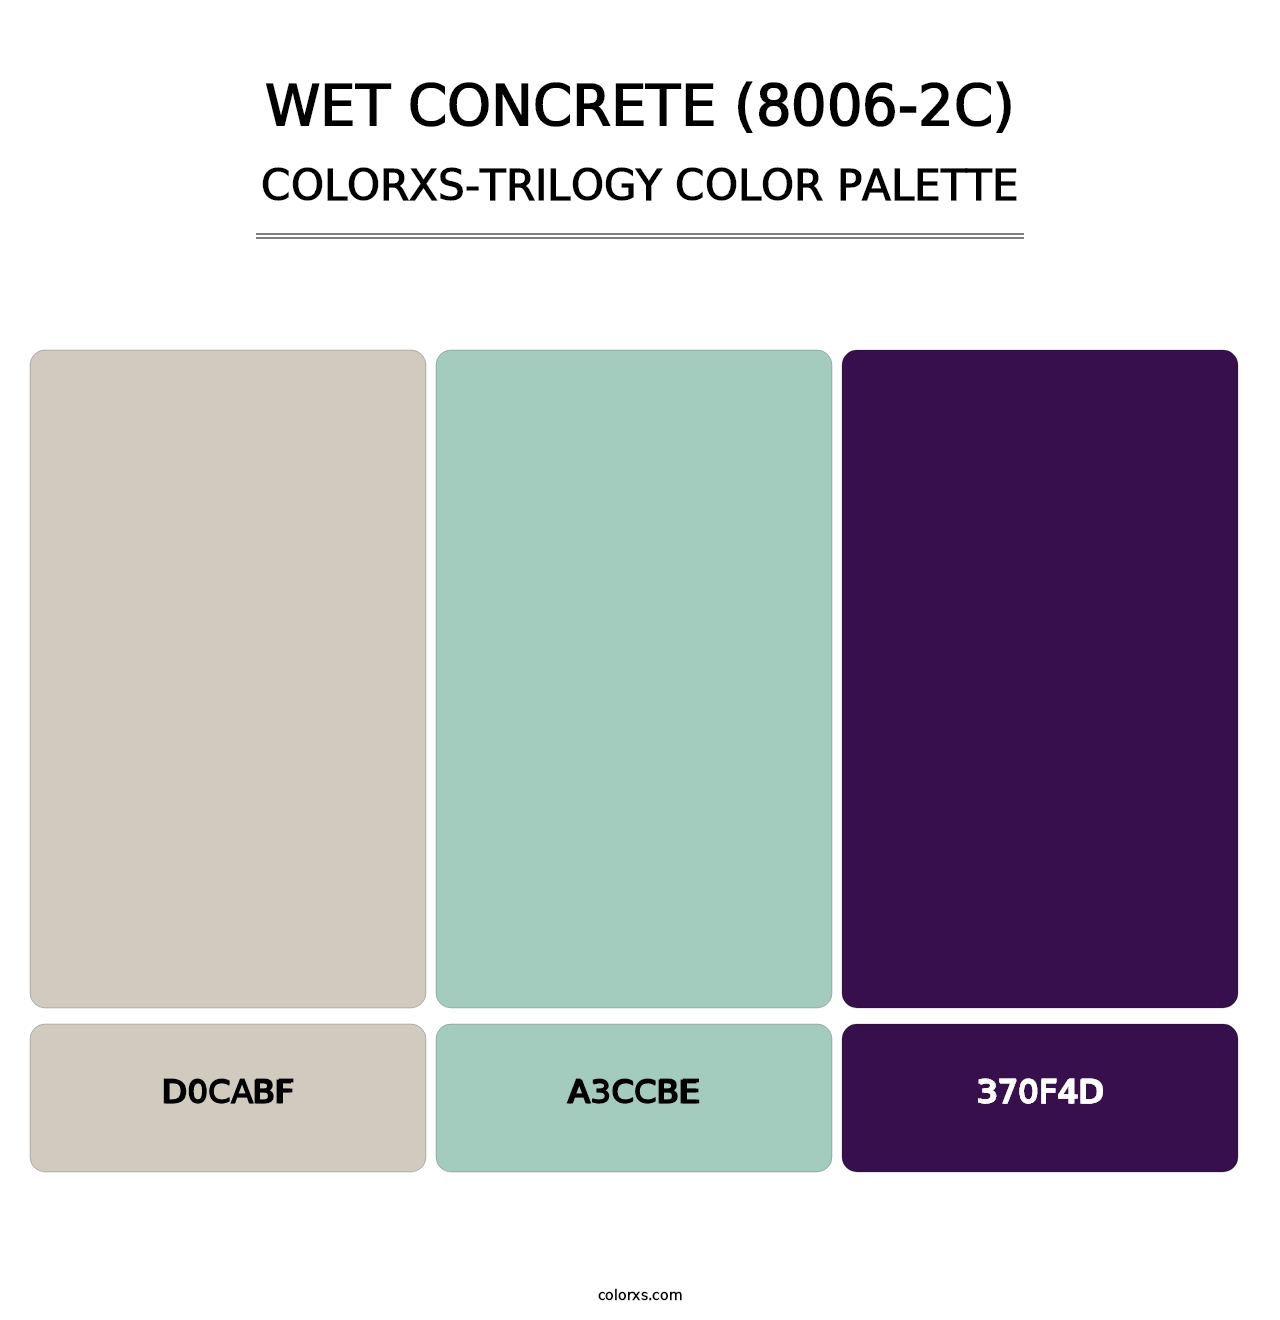 Wet Concrete (8006-2C) - Colorxs Trilogy Palette